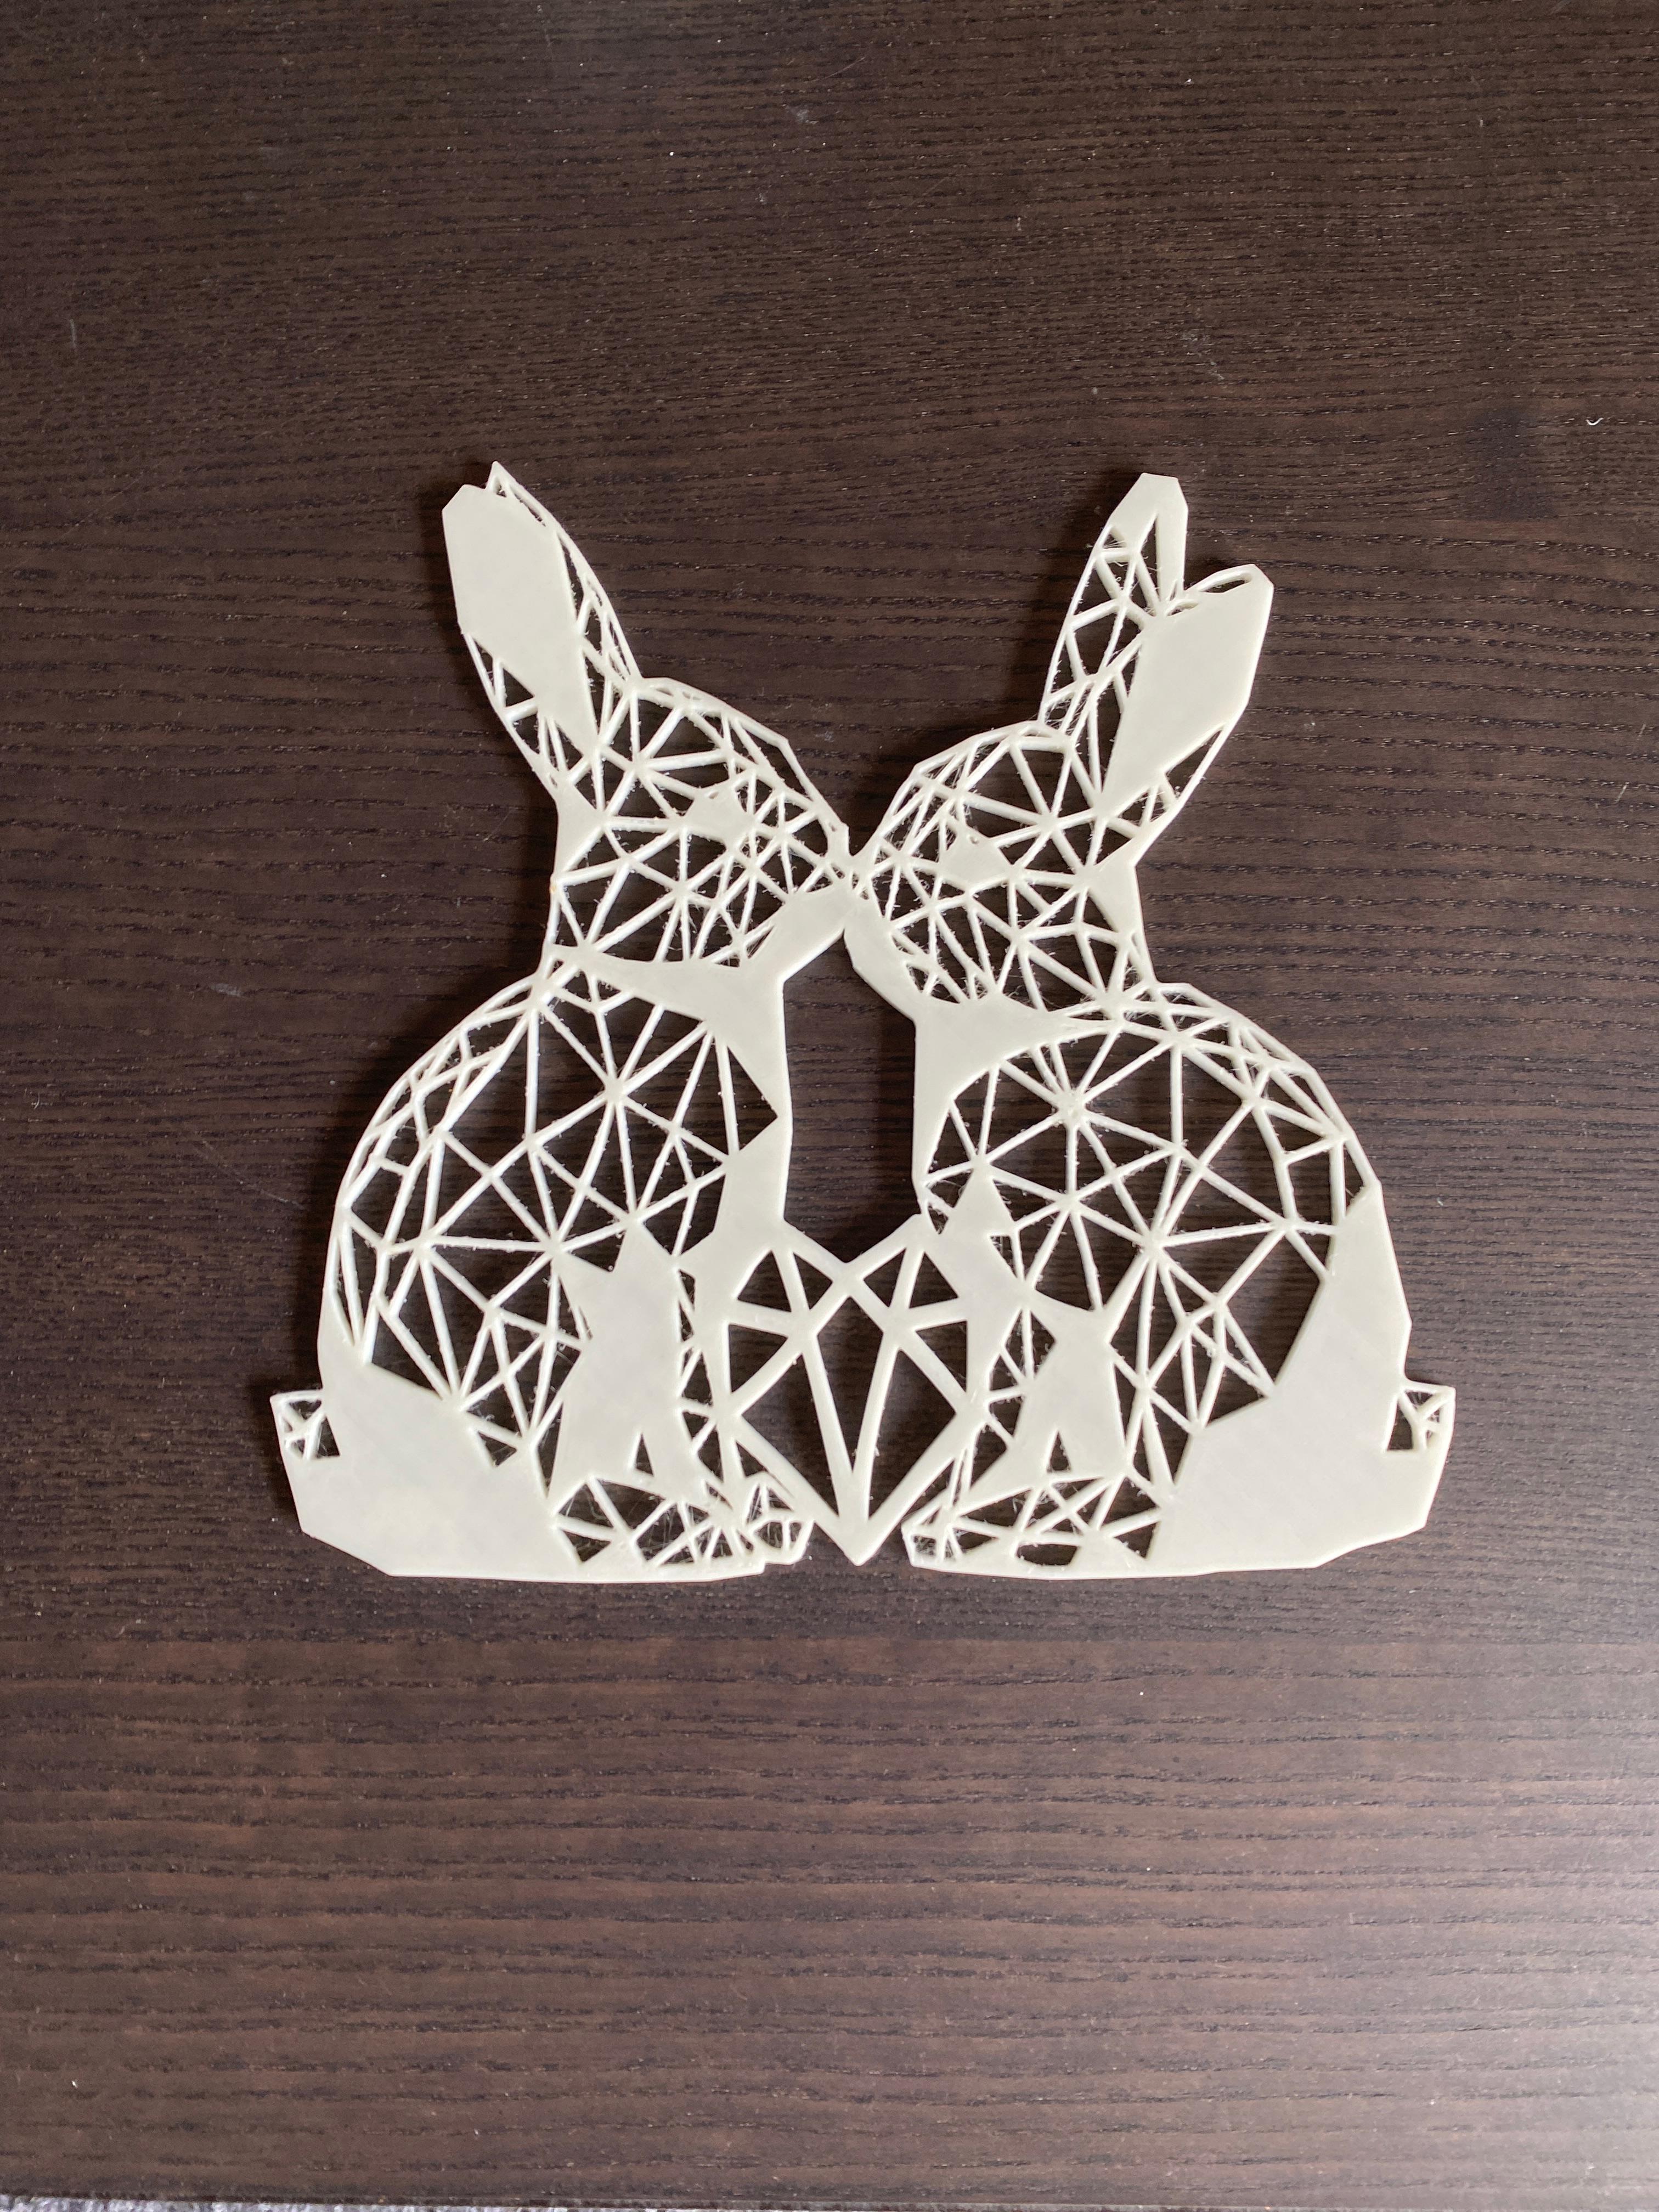 2 Rabbits and a heart.stl 3d model